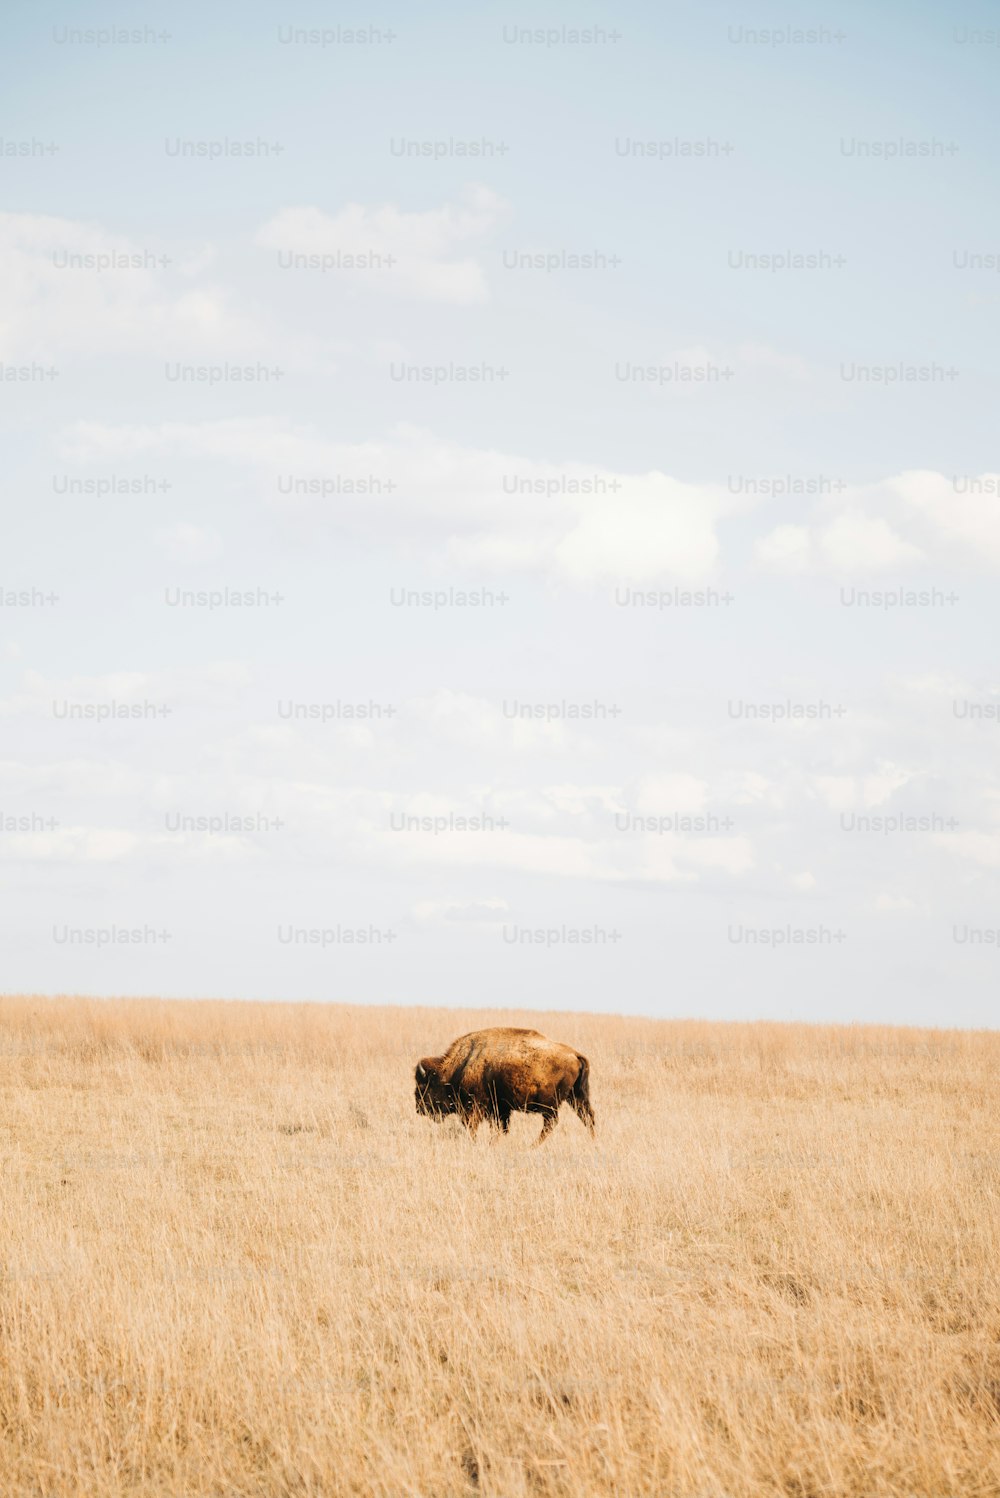 eine braune Kuh, die auf einem trockenen Grasfeld steht